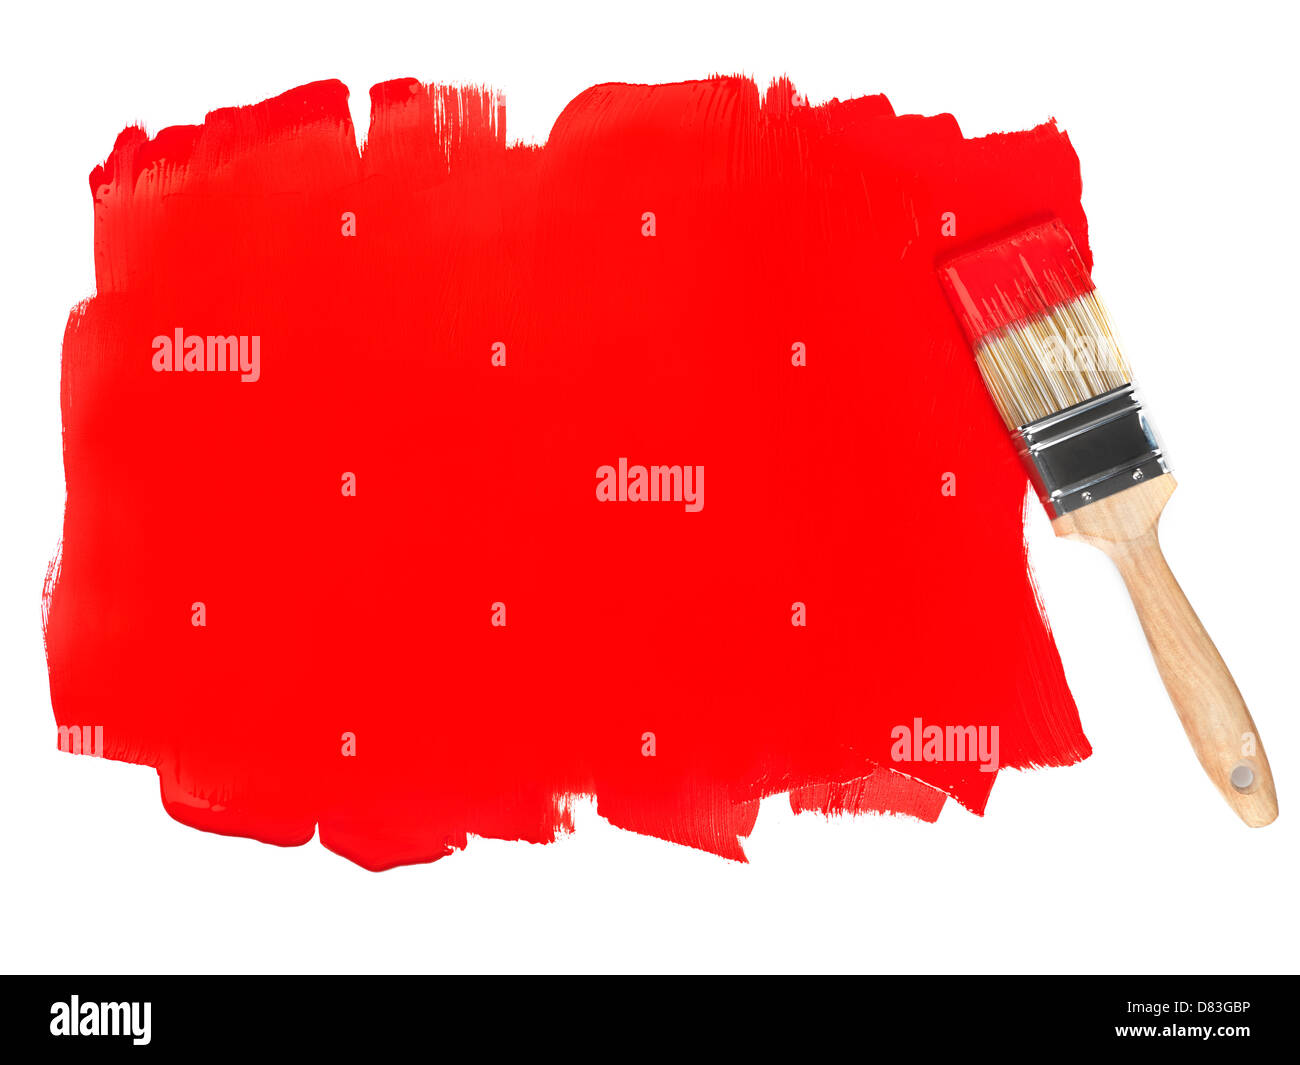 Area dipinta con vernice rossa e un pennello, sfondo concettuale isolato su bianco Foto Stock